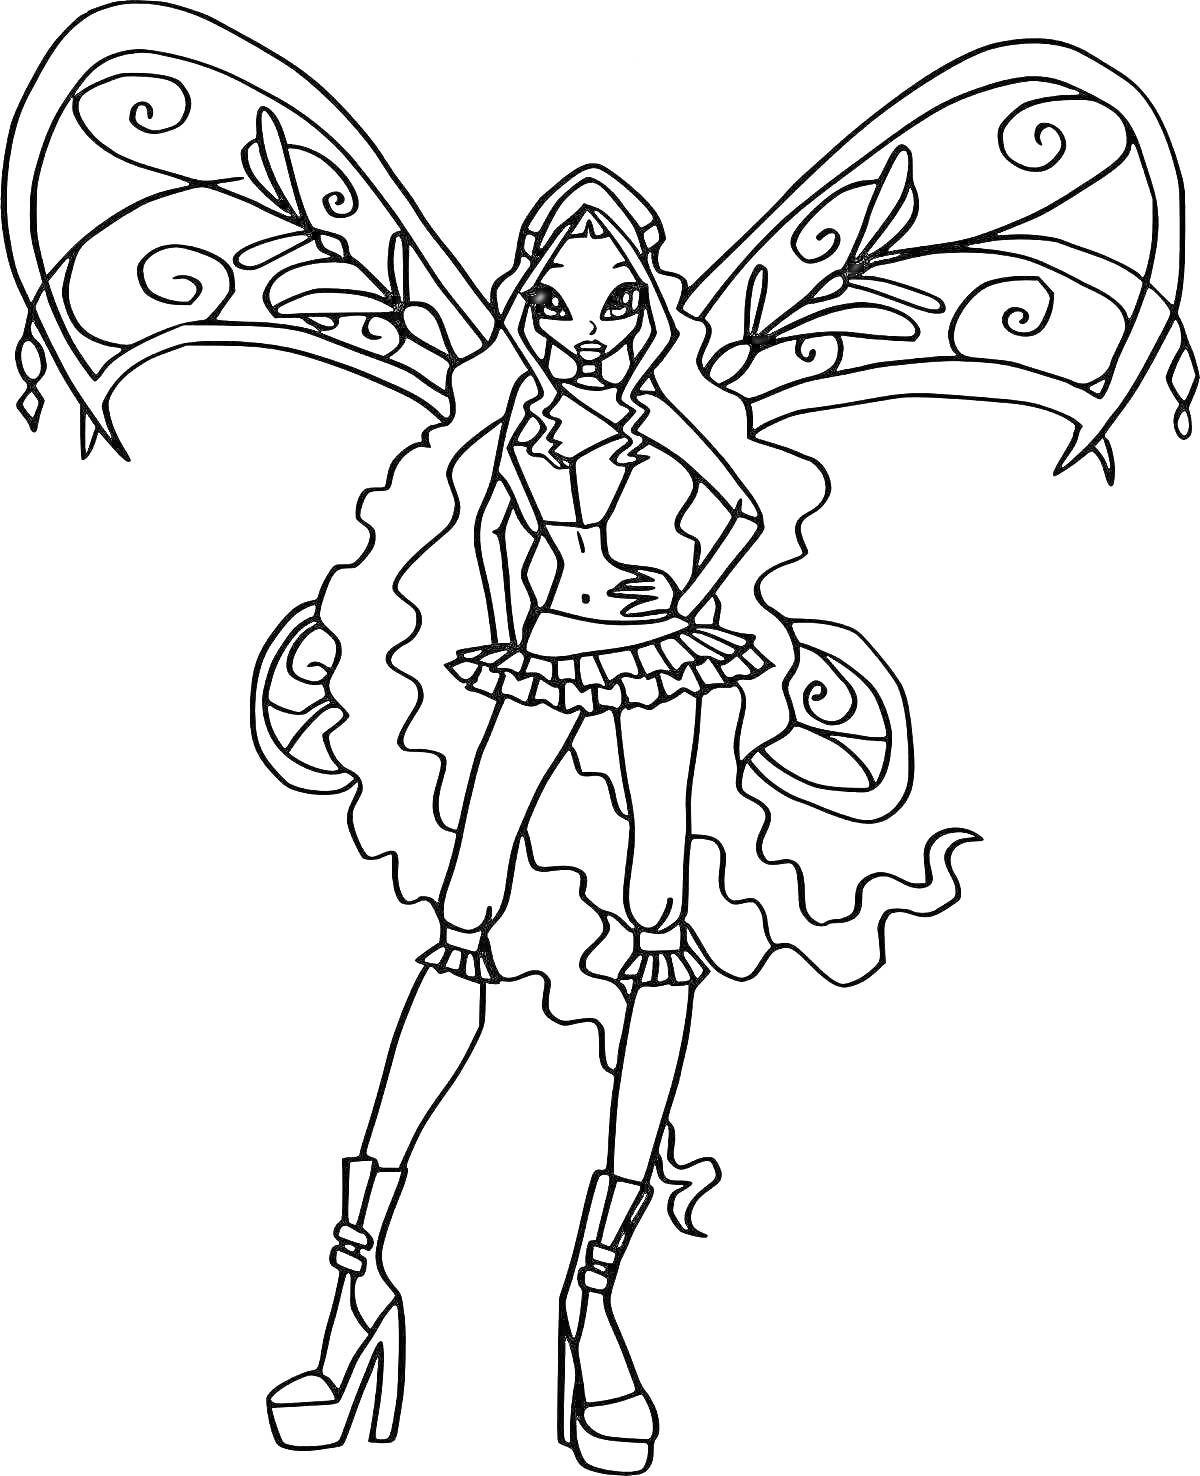 Раскраска фея с длинными распущенными волосами в костюме с юбкой и высокими ботинками, с большими крыльями с узорами